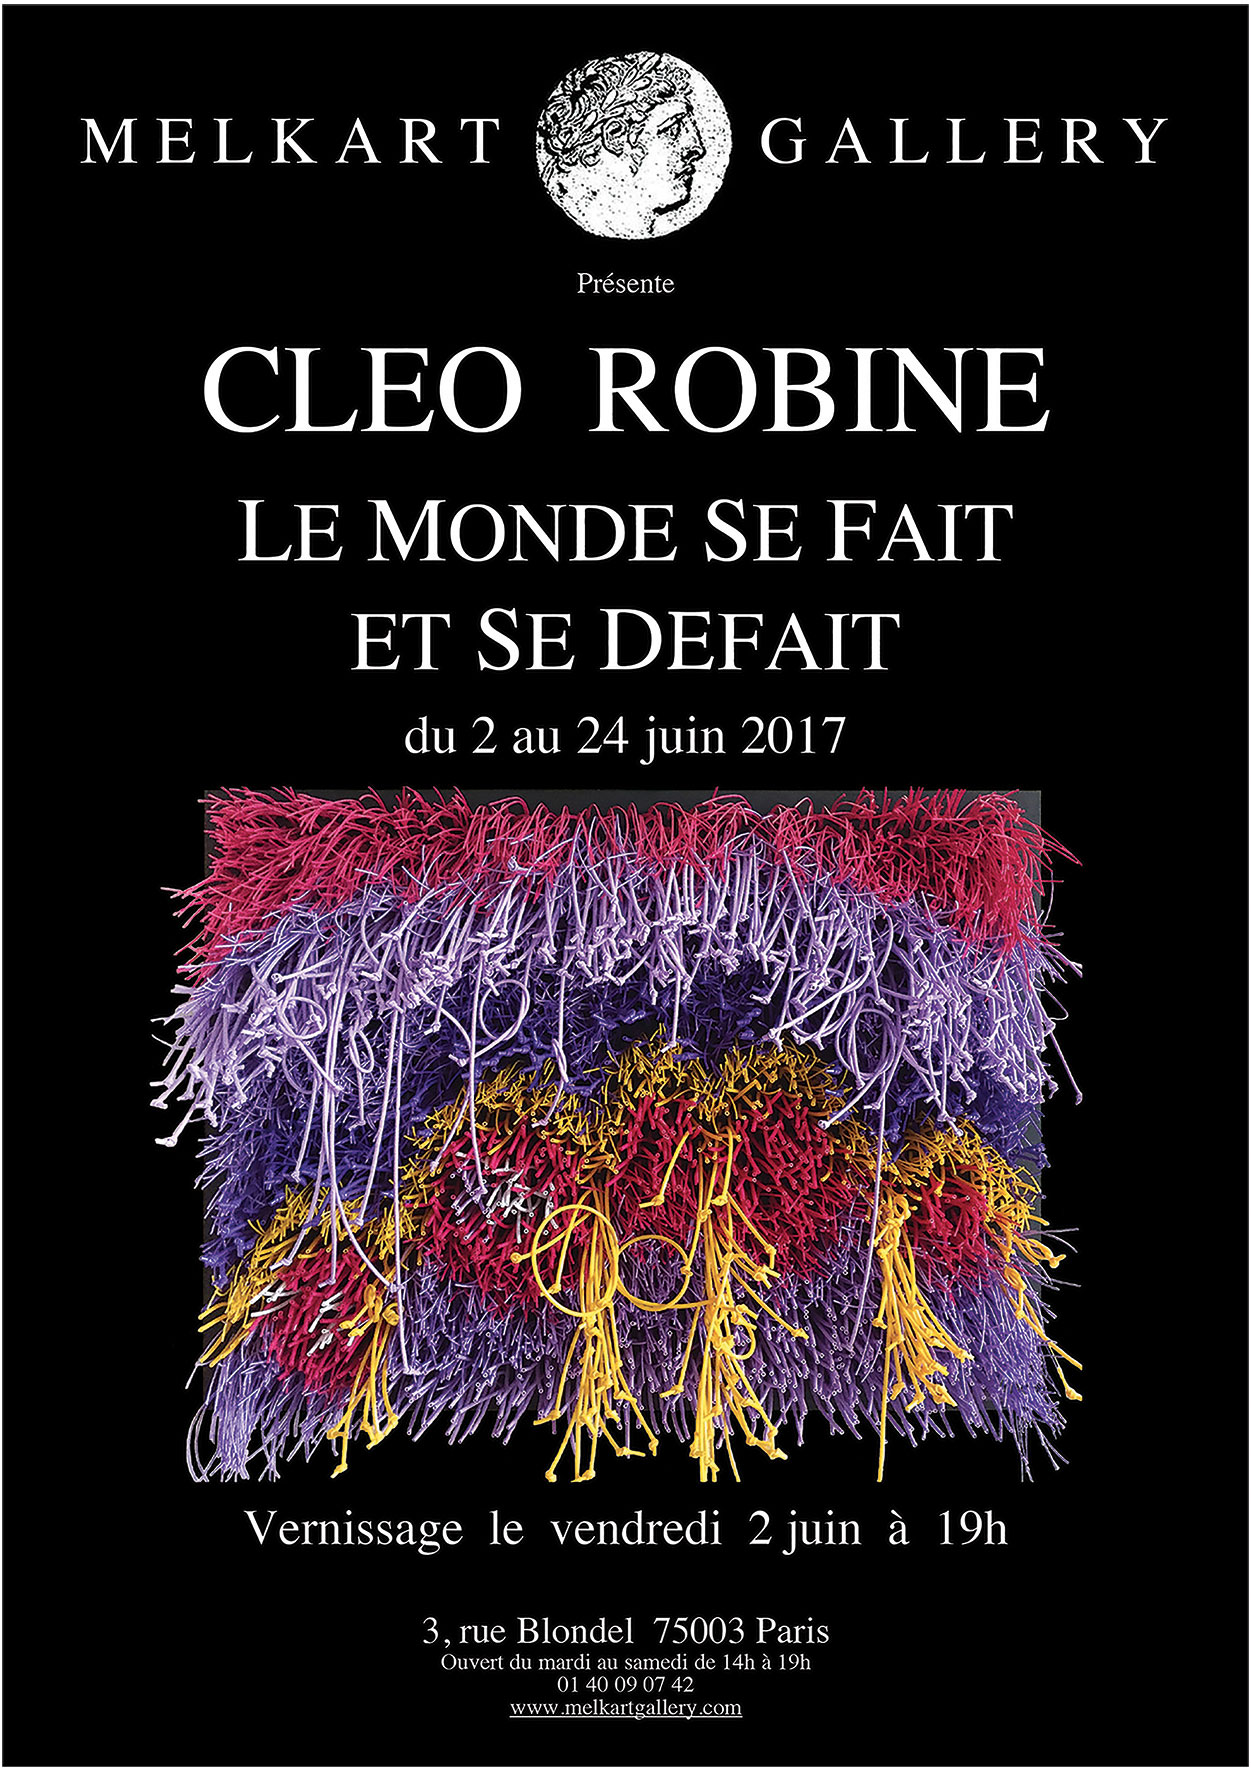 Cleo Robine,"Le Monde Se Fait Et Se Defait".